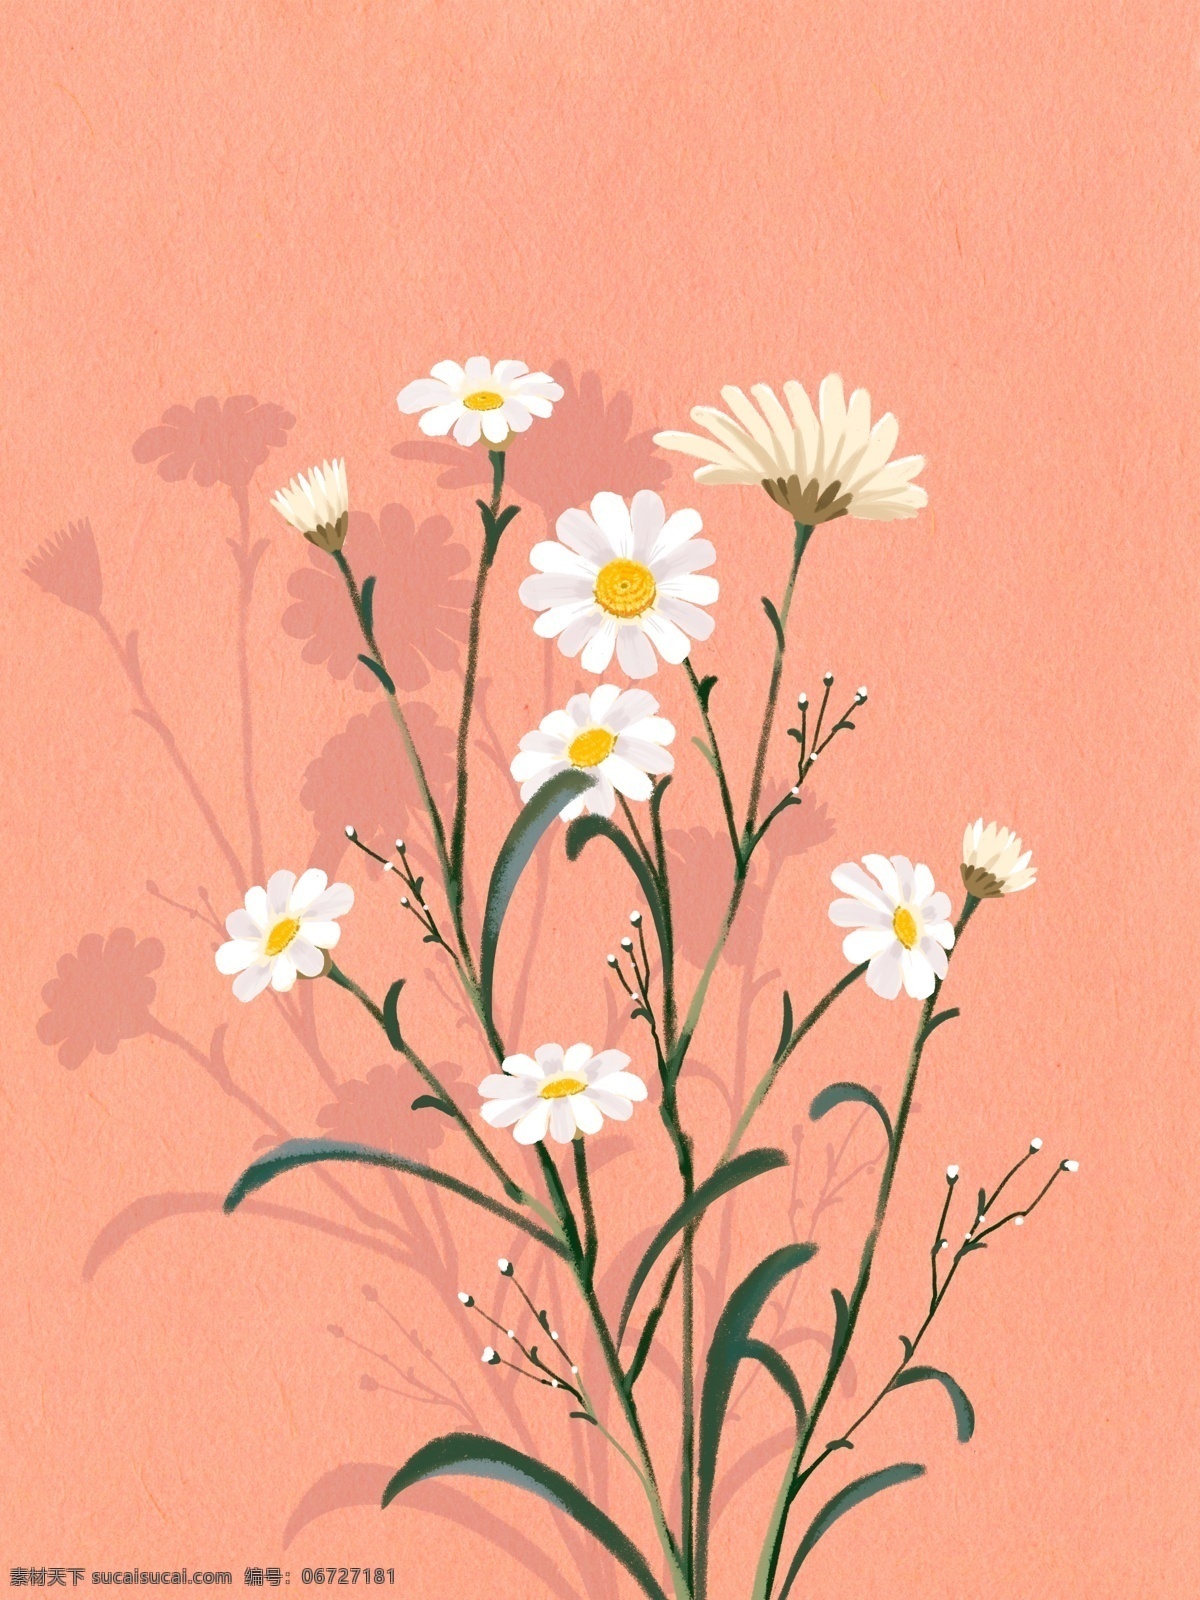 雏菊花朵图 雏菊 花朵 图 手绘 手绘花朵